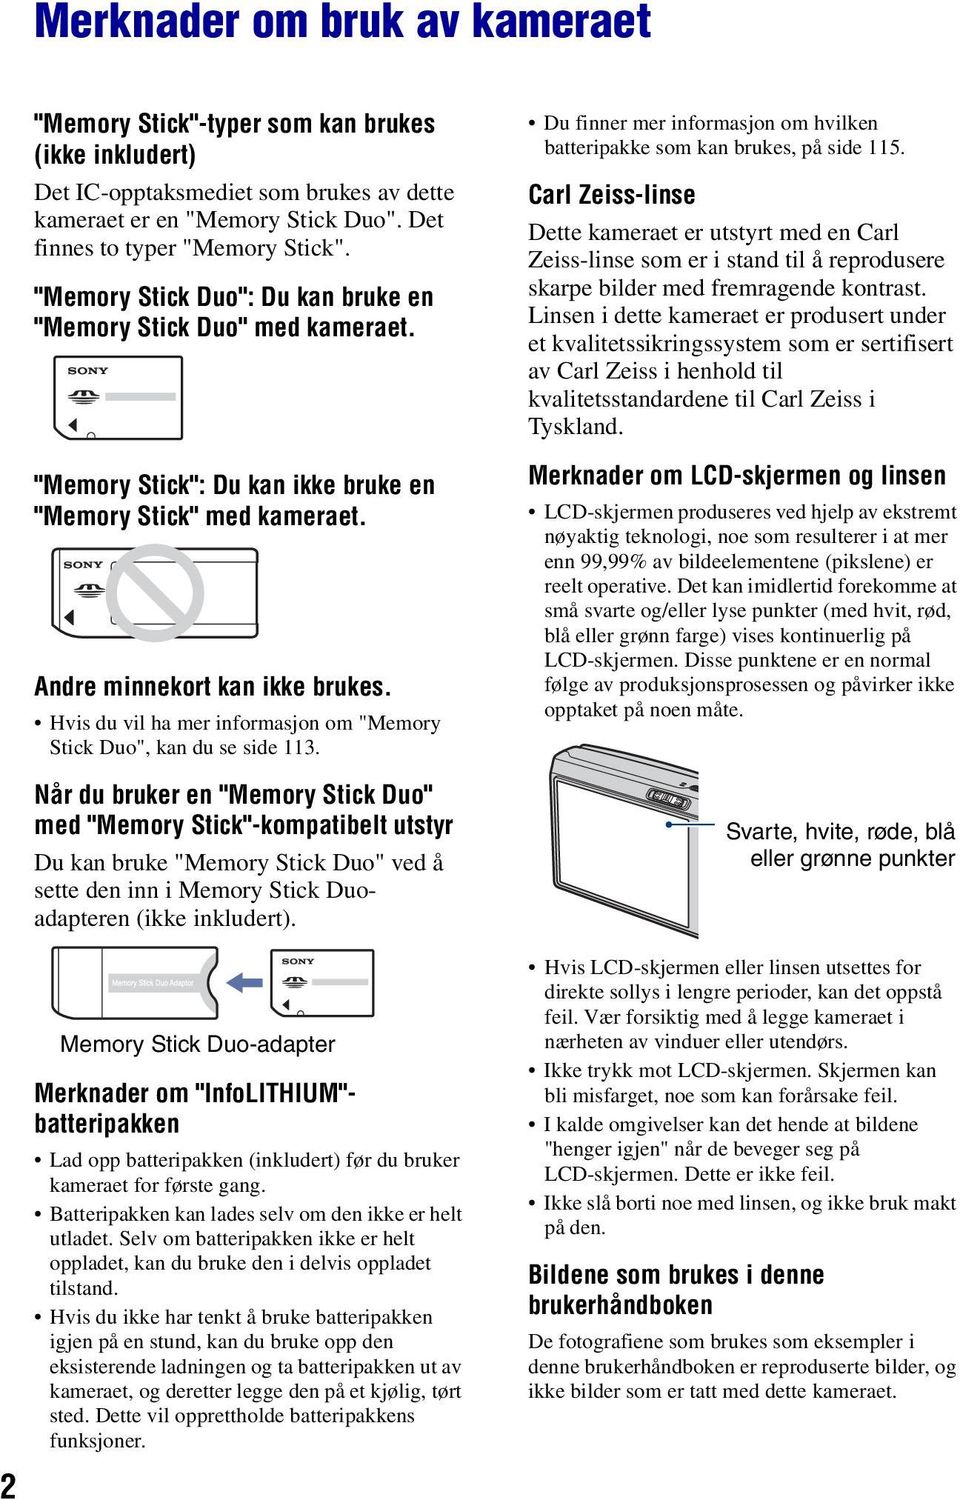 Hvis du vil ha mer informasjon om "Memory Stick Duo", kan du se side 113.